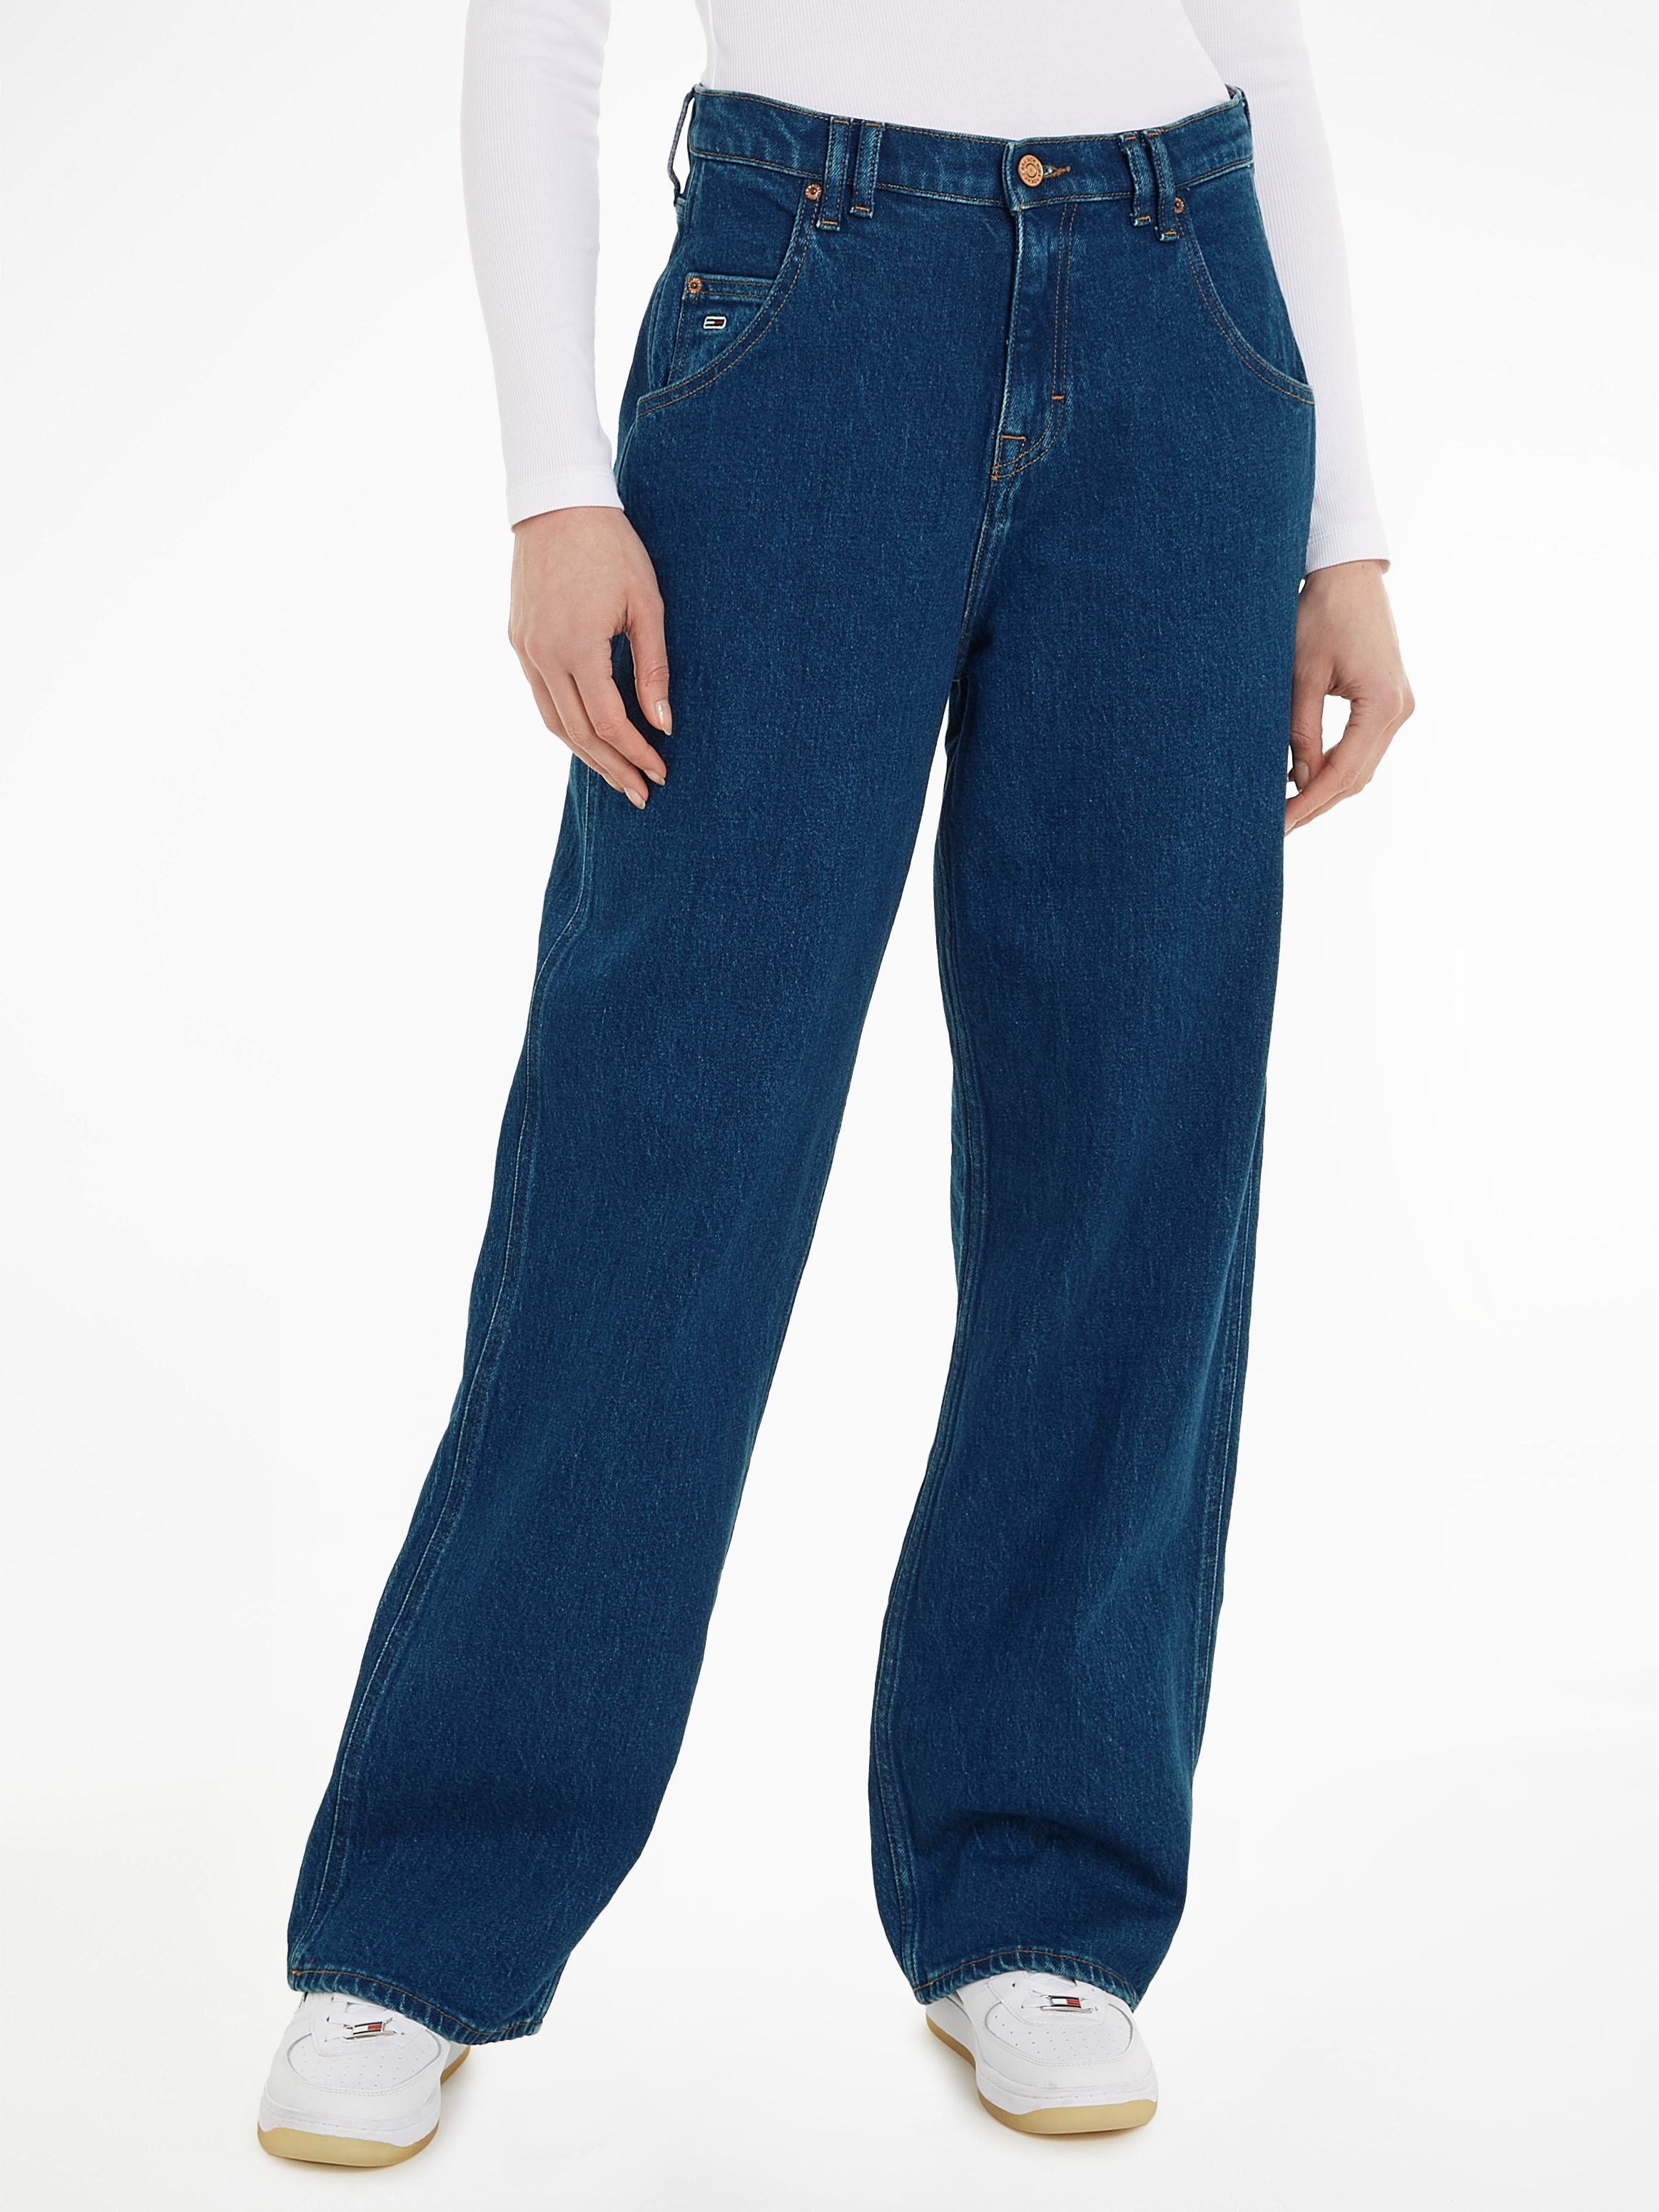 Destroyed Effekten bei BGY Tommy OTTO JEAN bestellen »DAISY Jeans online mit Jeans BH6110«, leichten Weite LW